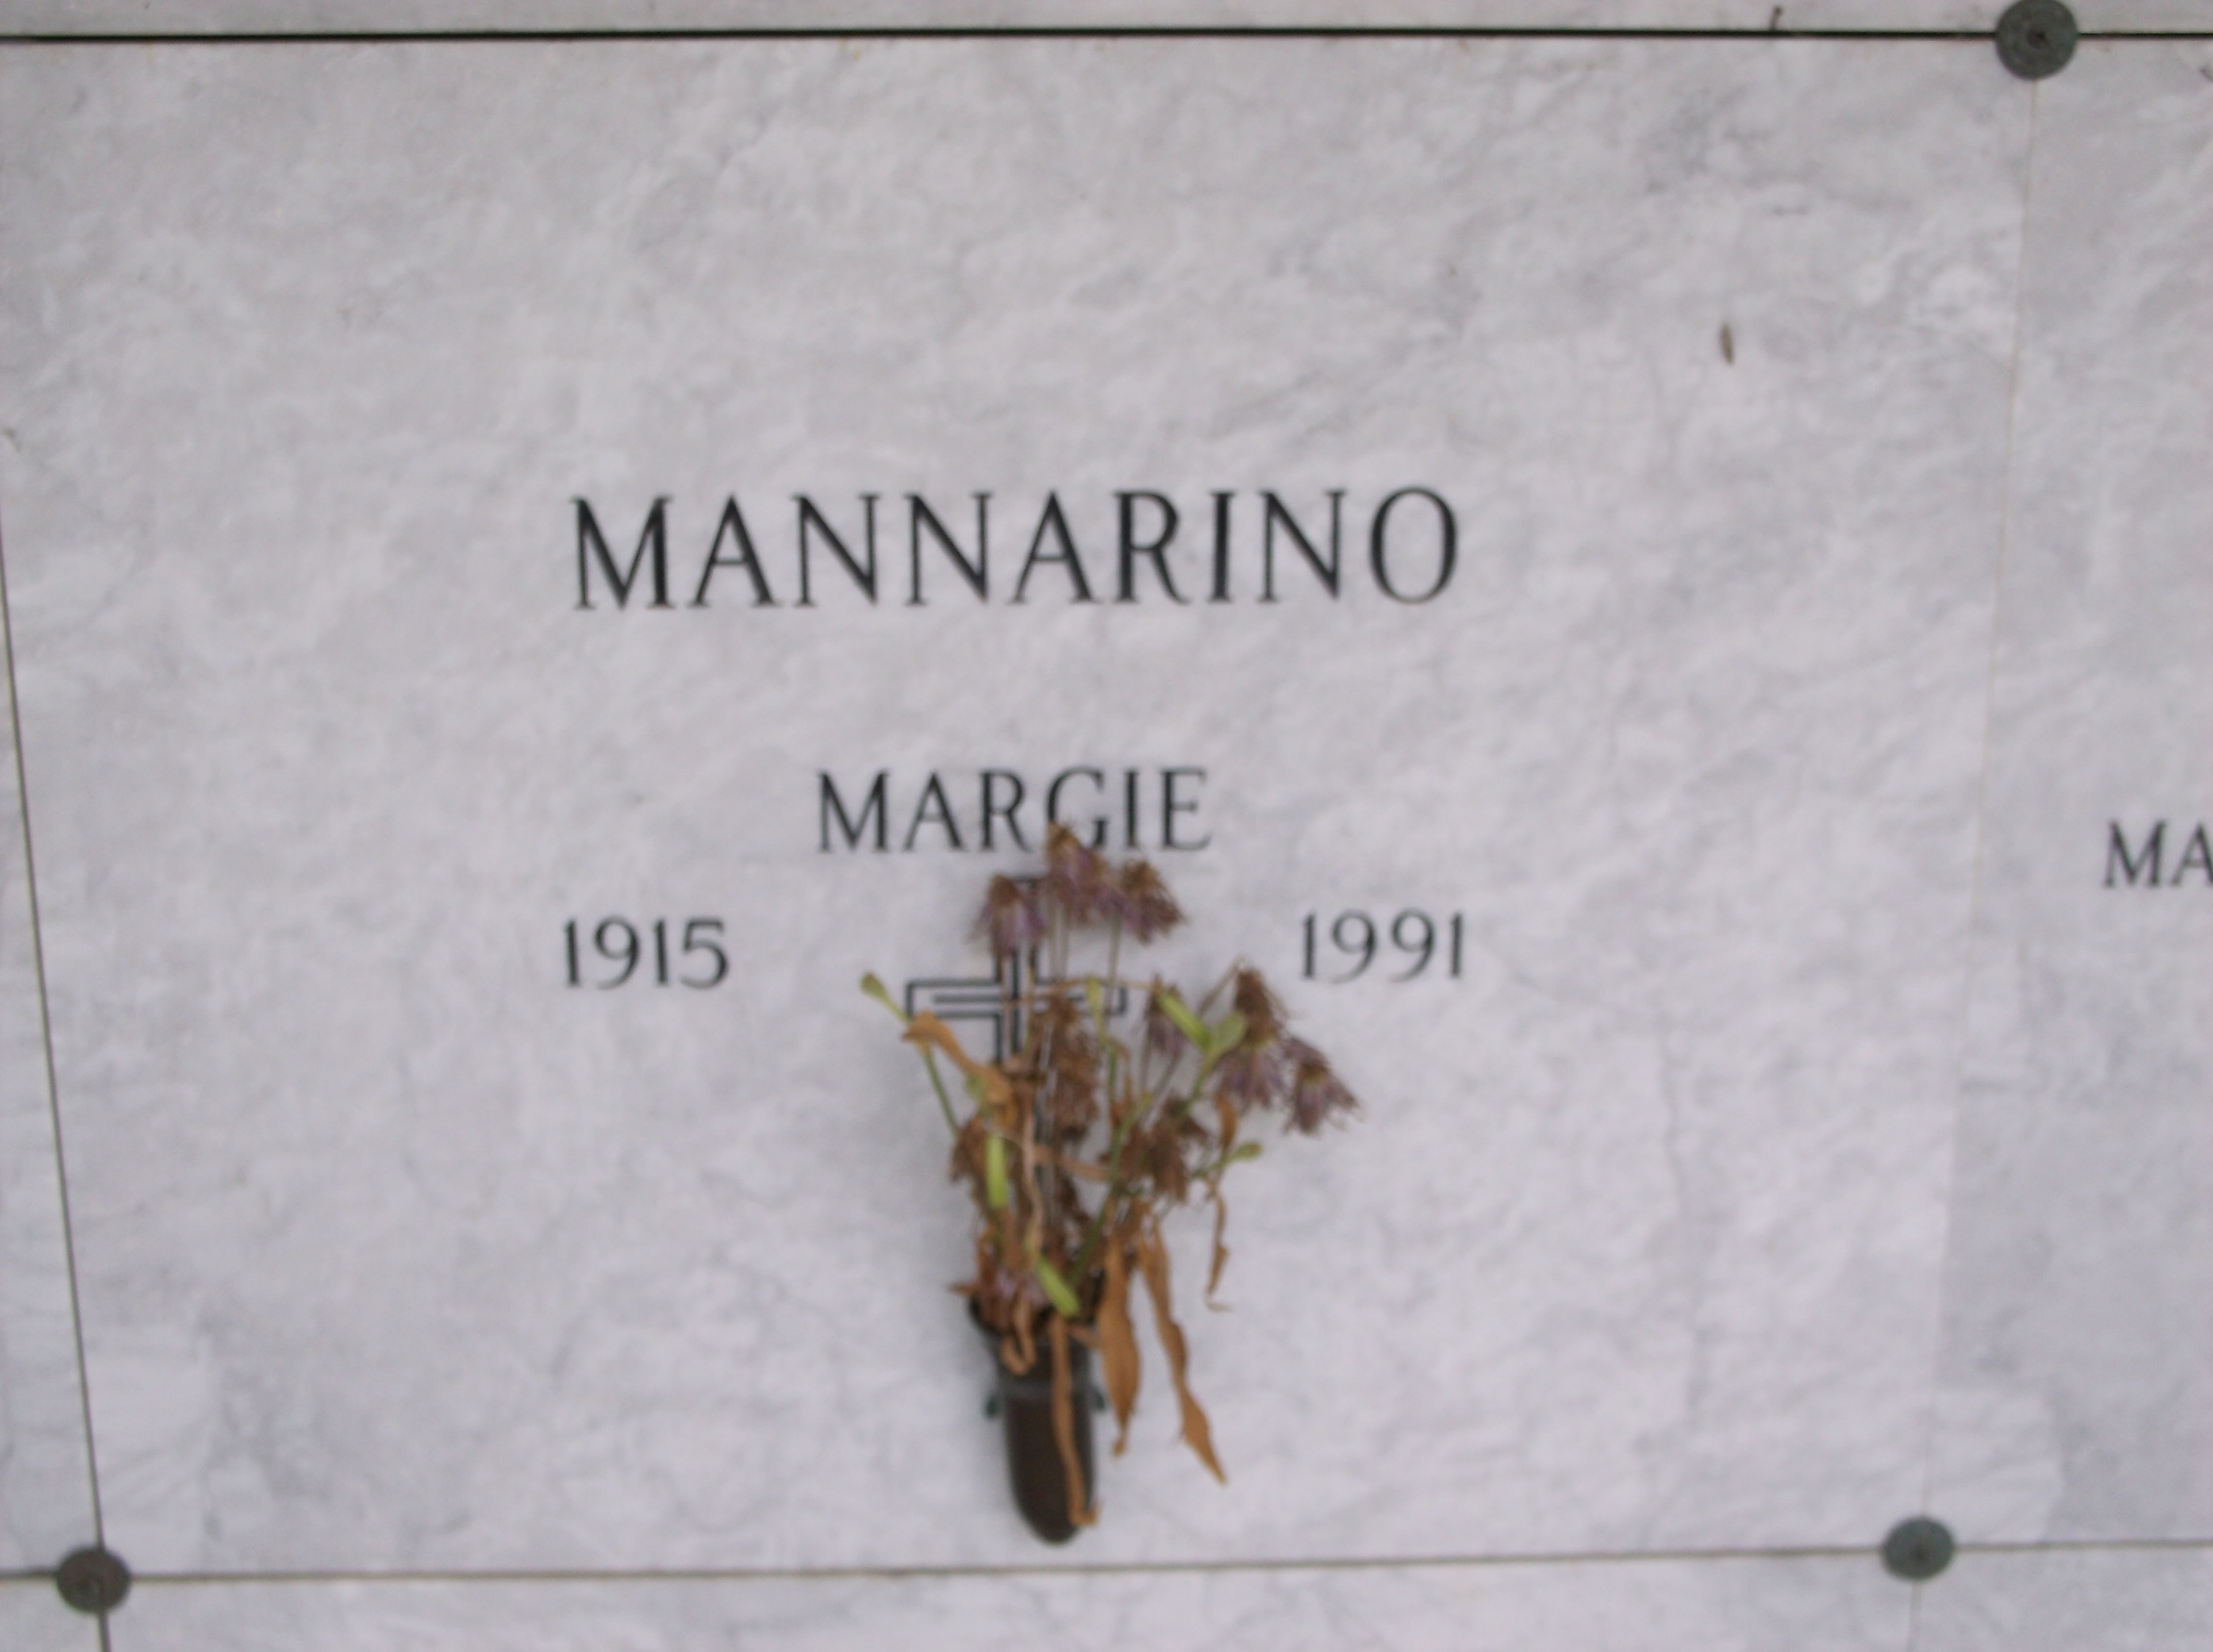 Margie Mannarino